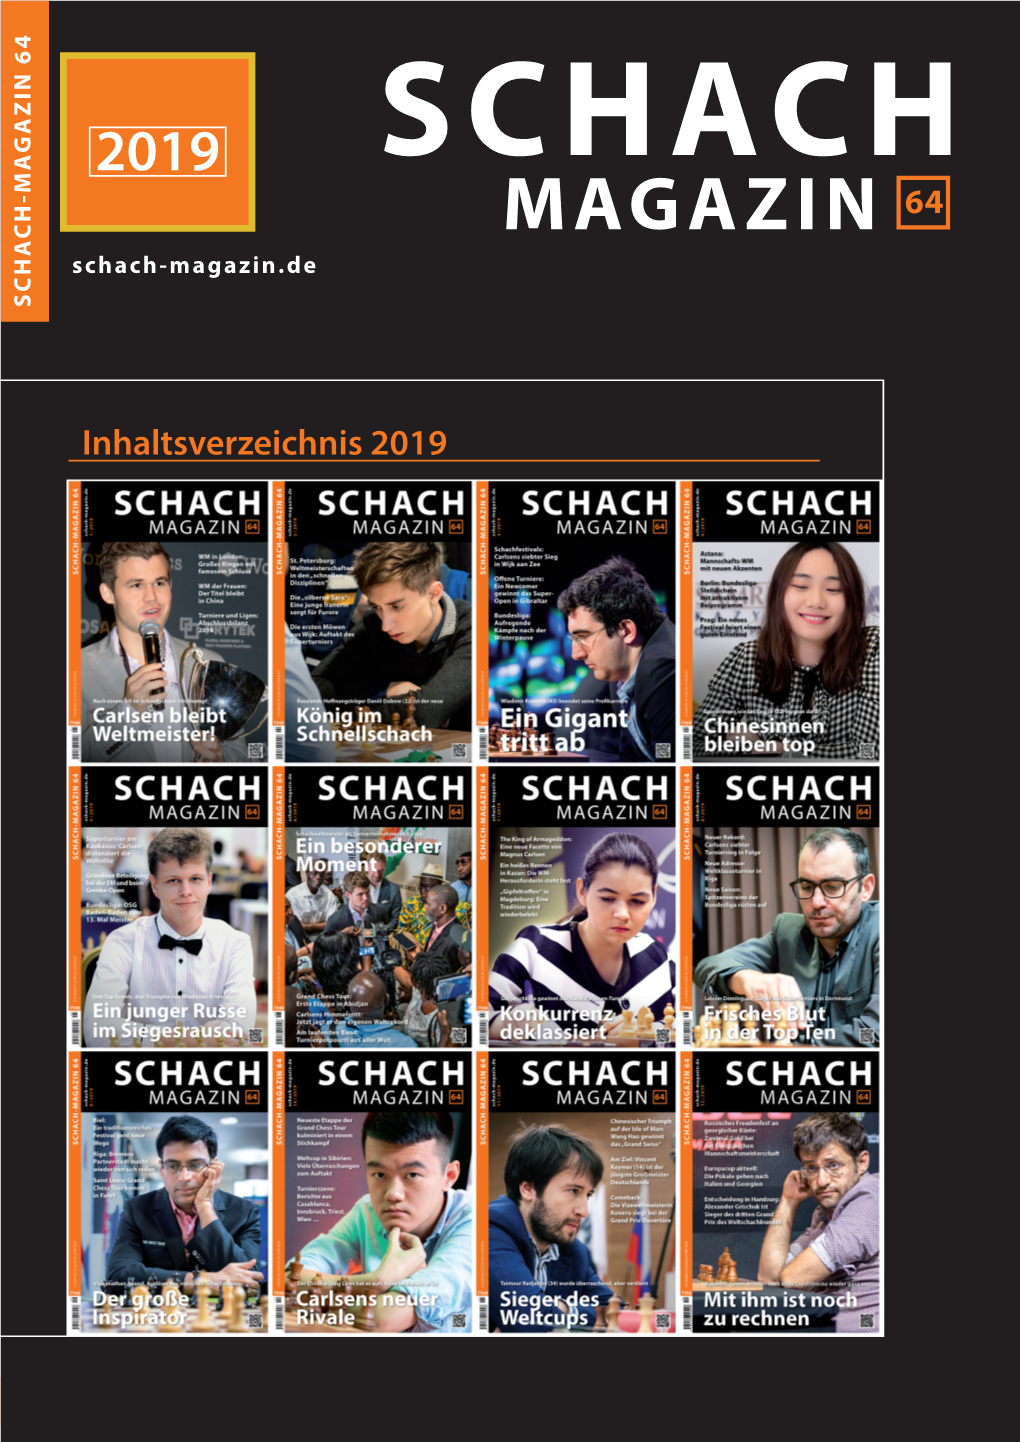 Inhaltsverzeichnis 2019 2019 SCHACH MAGAZIN 64 Schach-Magazin.De SCHACH-MAGAZIN 64 SCHACH-MAGAZIN